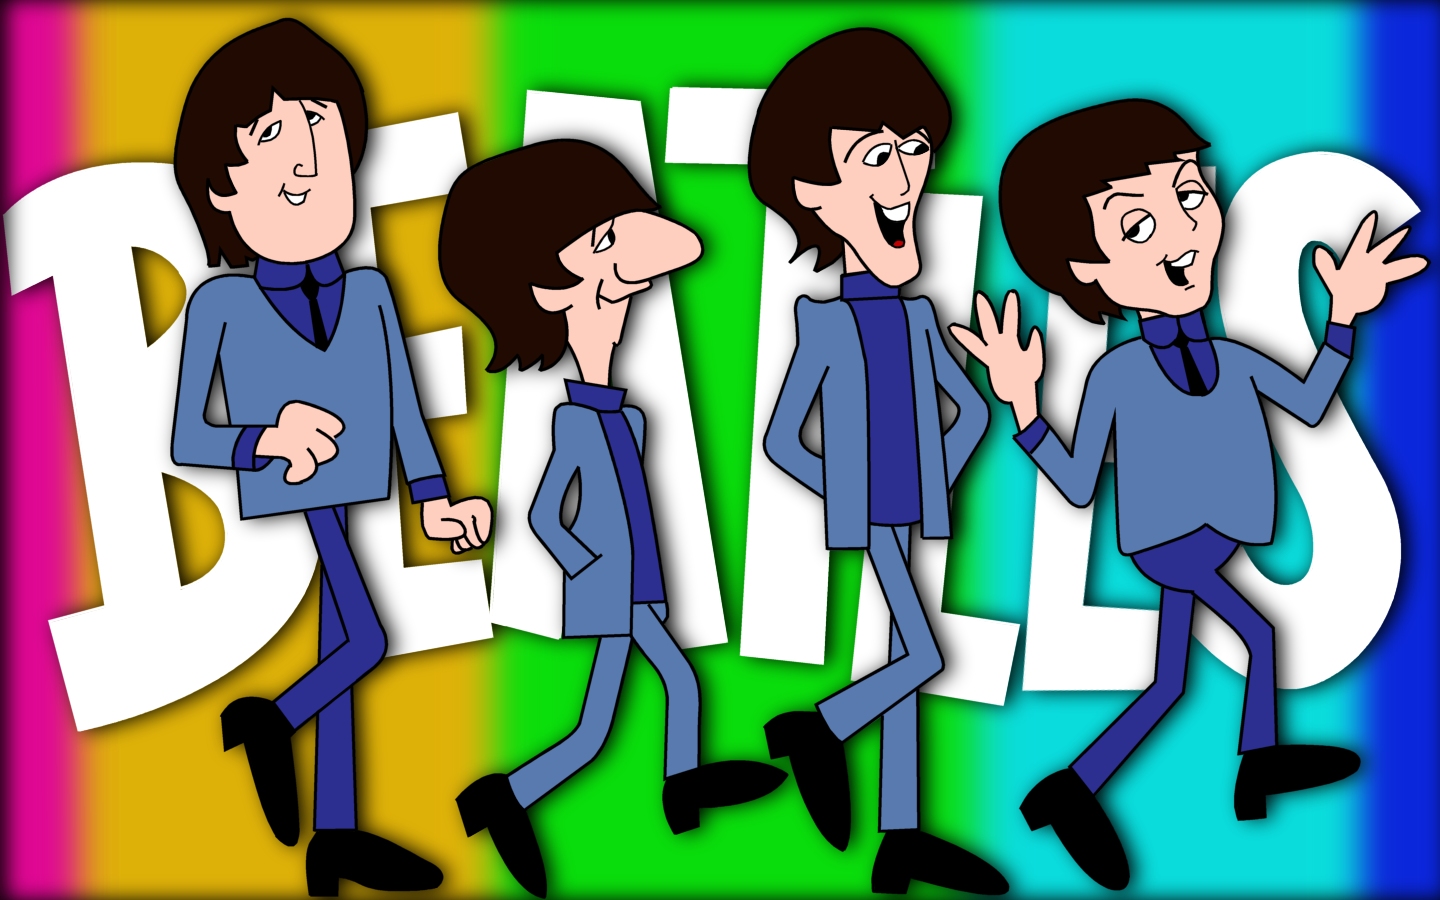 The Bealtes Cartoon hình nền - The Beatles Cartoon hình nền (26631881) -  fanpop